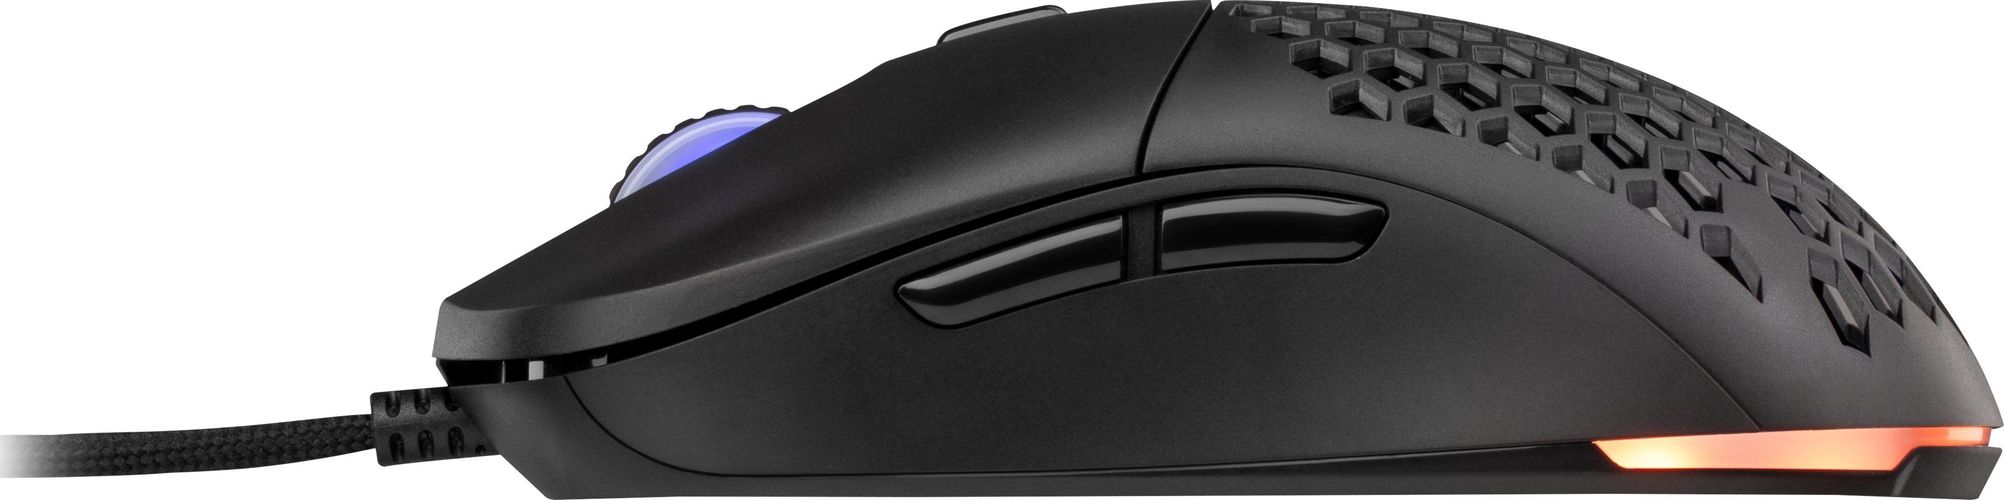 Игровая мышь 2E Gaming HyperDrive Pro WL, Черный, фото